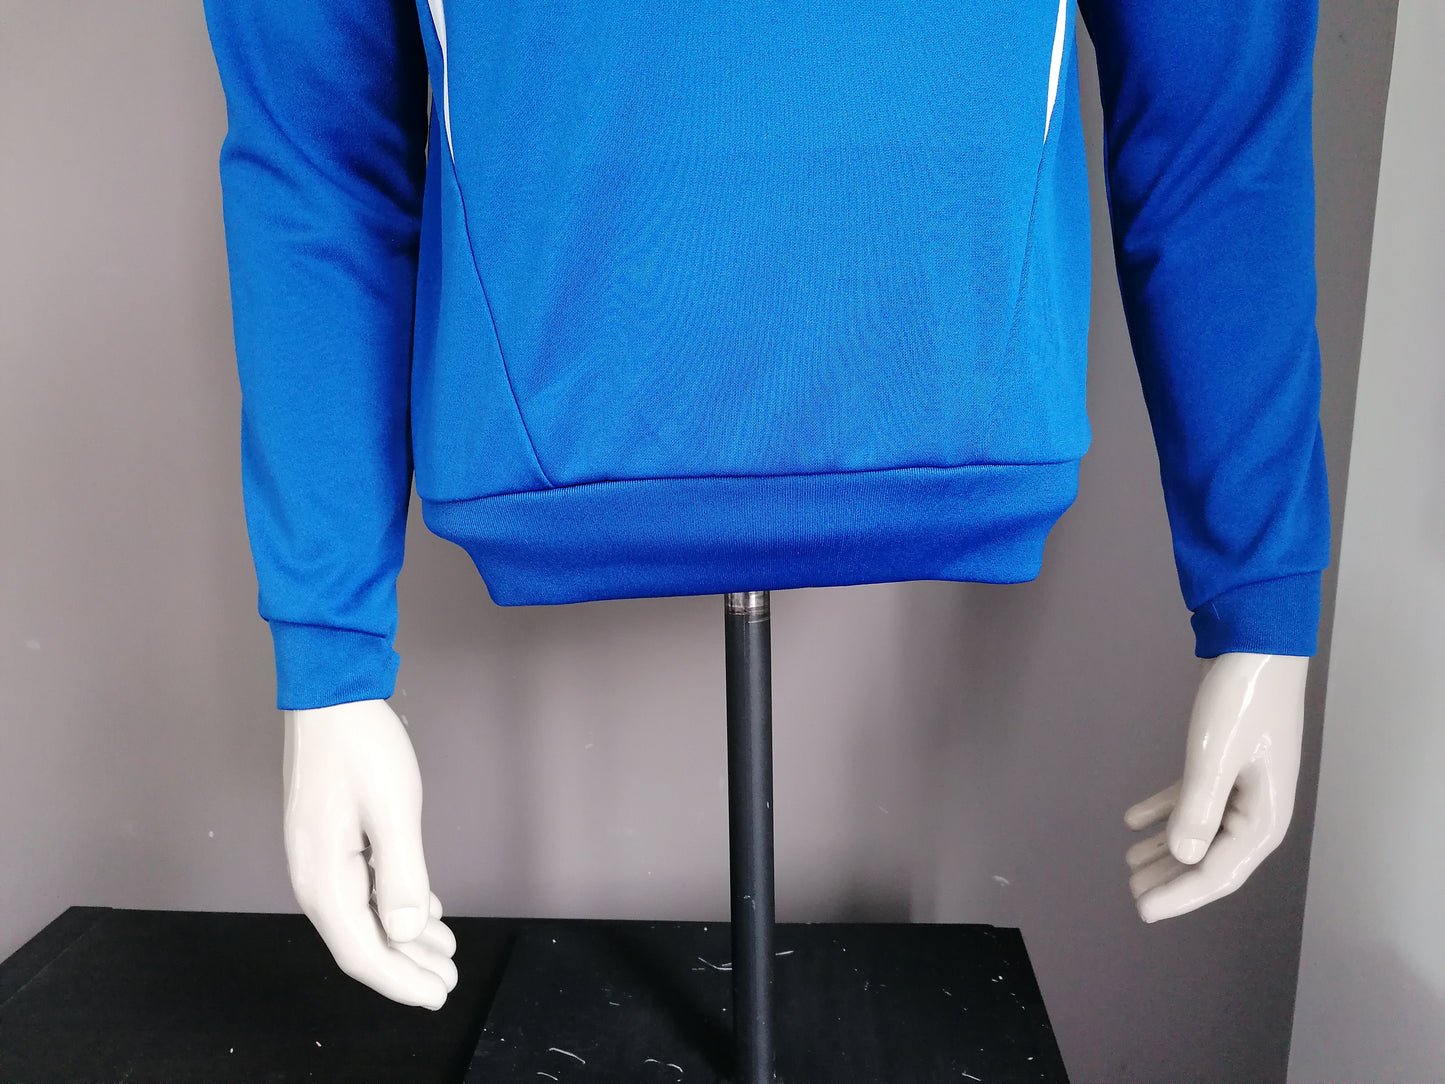 Hummel "svg" suéter deportivo. Blanco azul coloreado. Talla M.